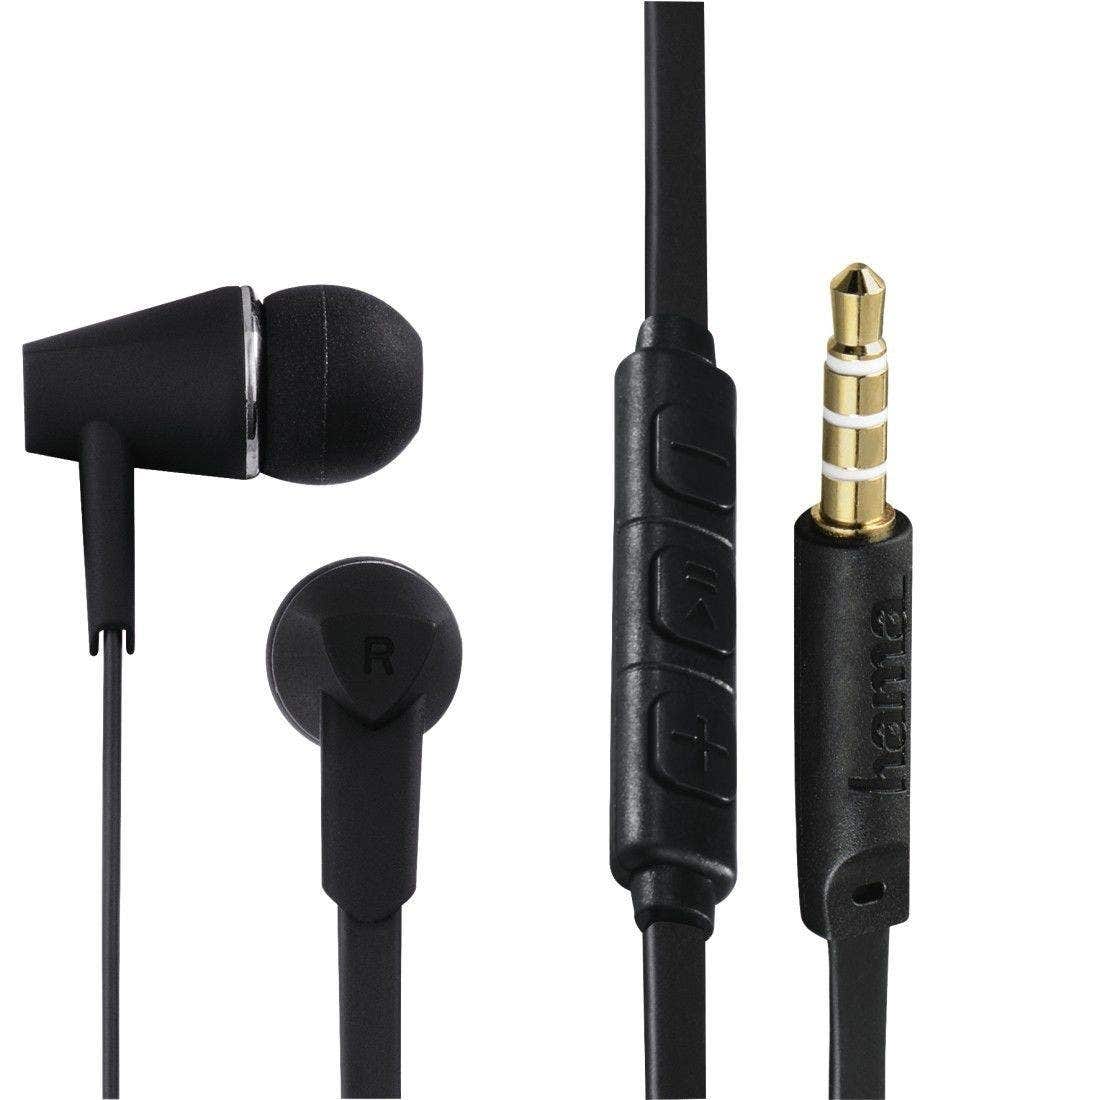 Hama" Joyâ€ headphones, in-ear, microphone, flat ribbon cable, Black